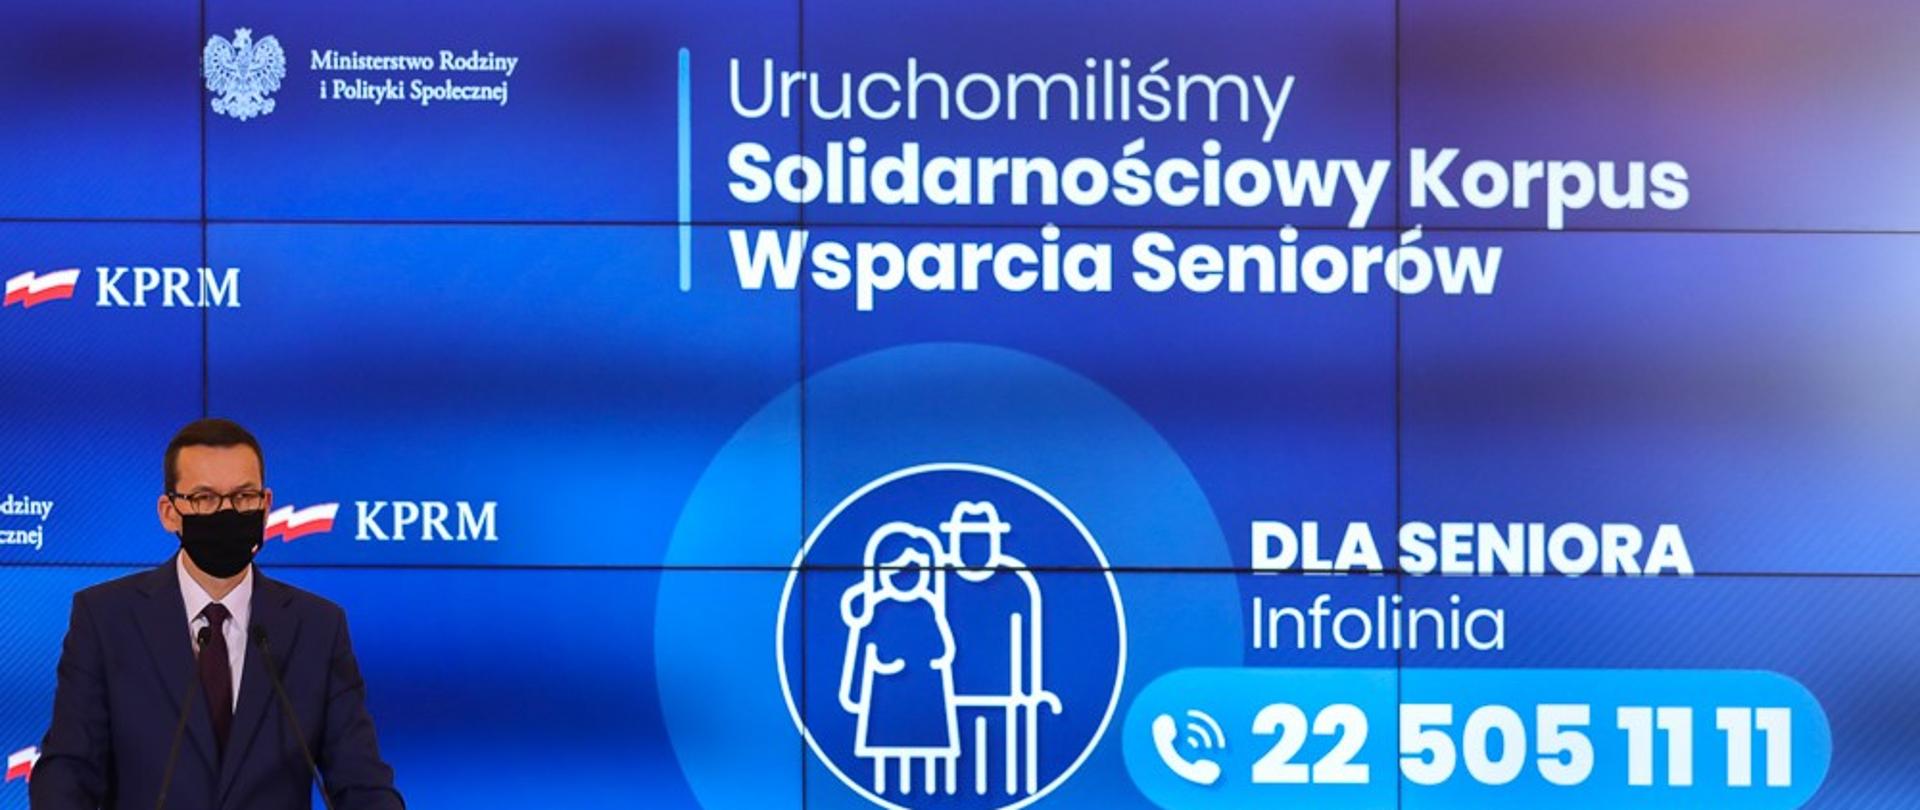 Premier Mateusz Morawiecki w ciemnym garniturze i w maseczce zakrywającej usta i nos podczas konferencji prasowej. Z tyłu niebieskie tło z napisem Uruchomiliśmy Solidarnościowy Korpus Wsparcia Seniorów. Infolinia dla seniora 22 505 11 11.